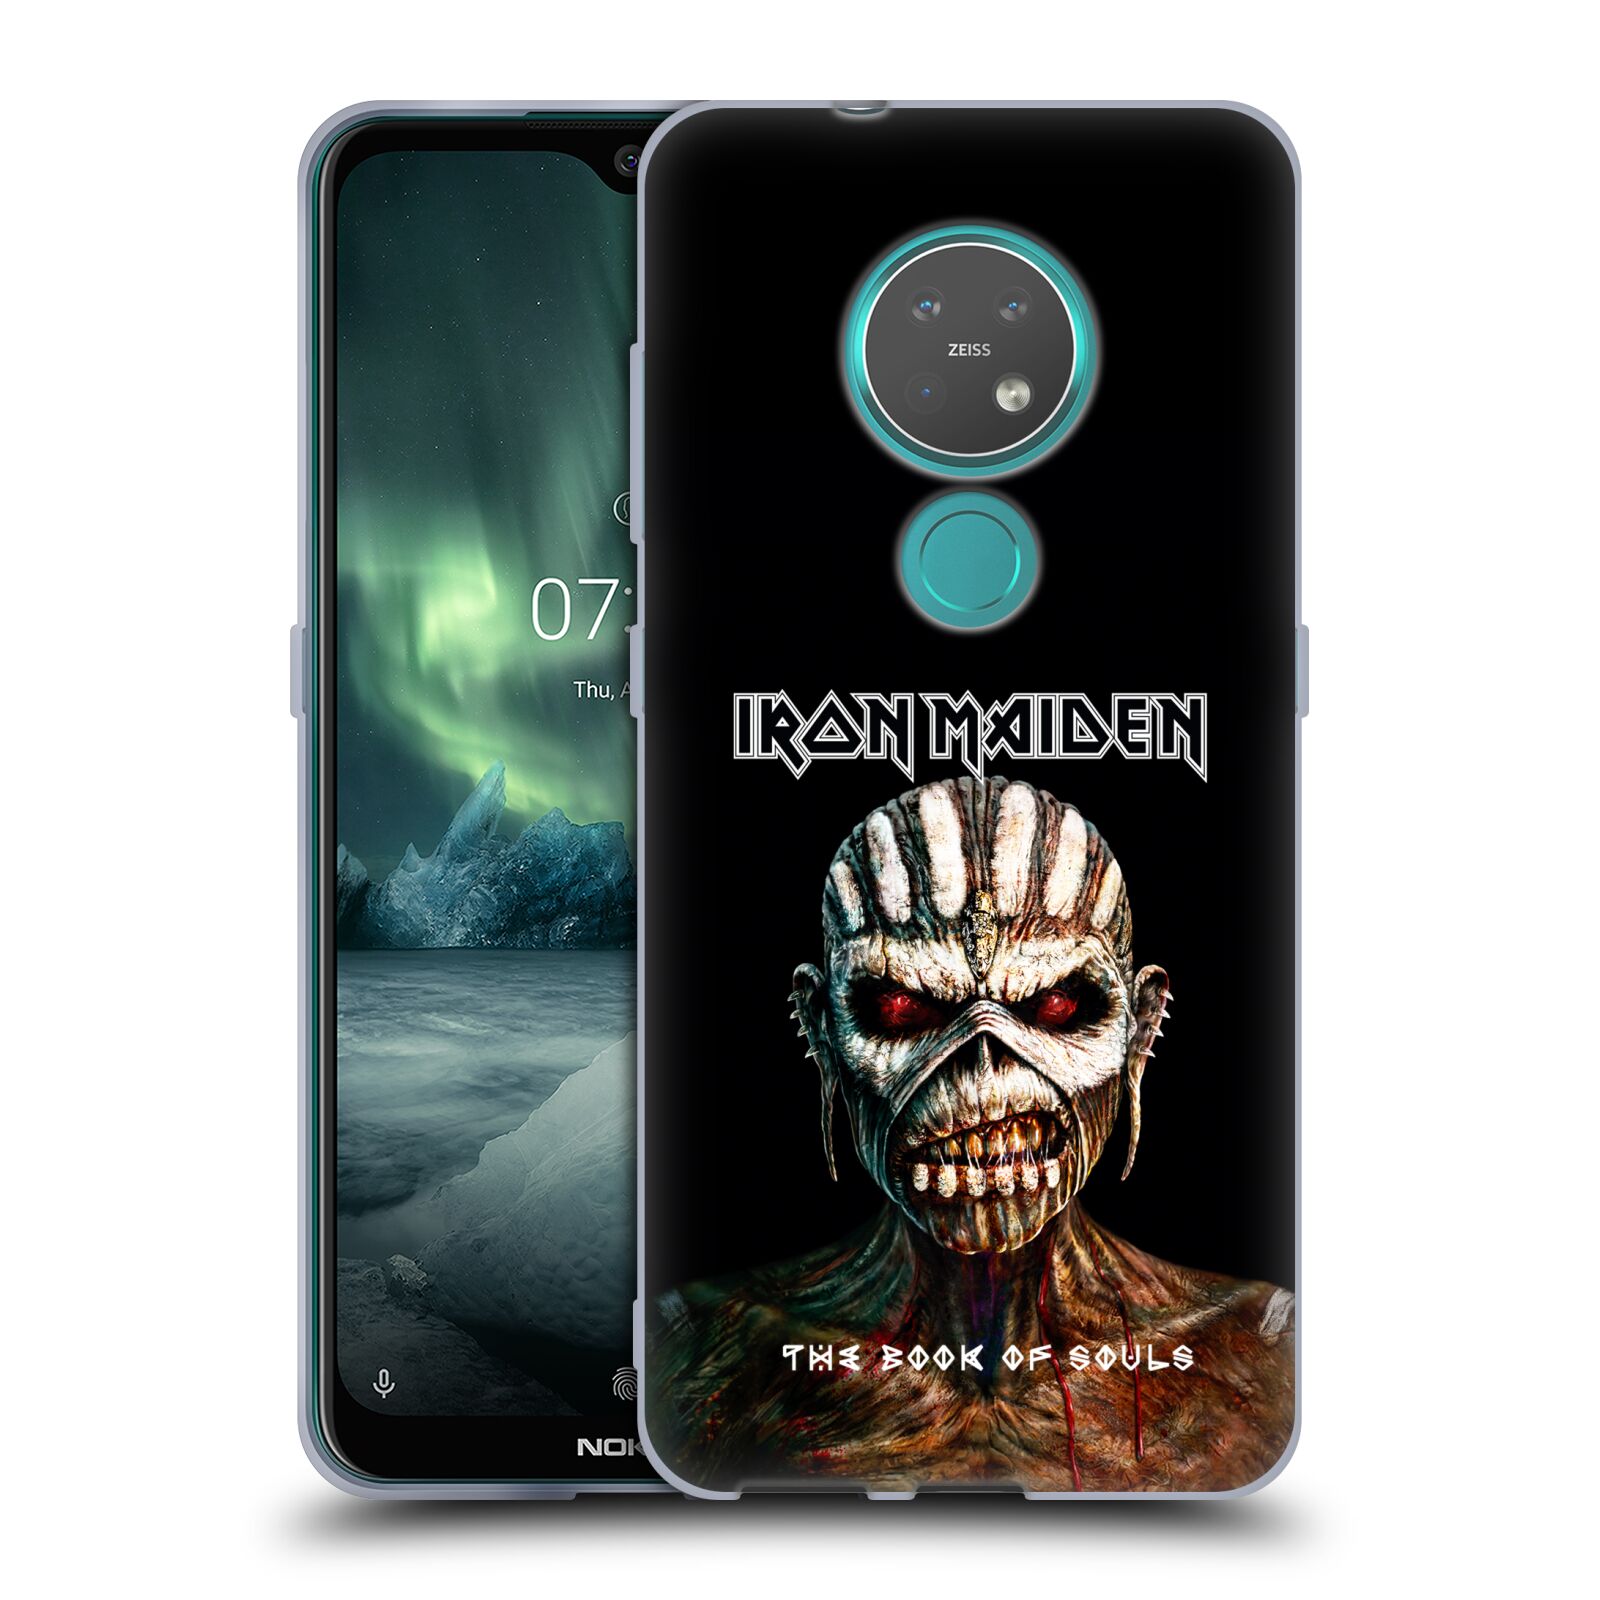 Silikonové pouzdro na mobil Nokia 7.2 - Head Case - Iron Maiden - The Book Of Souls